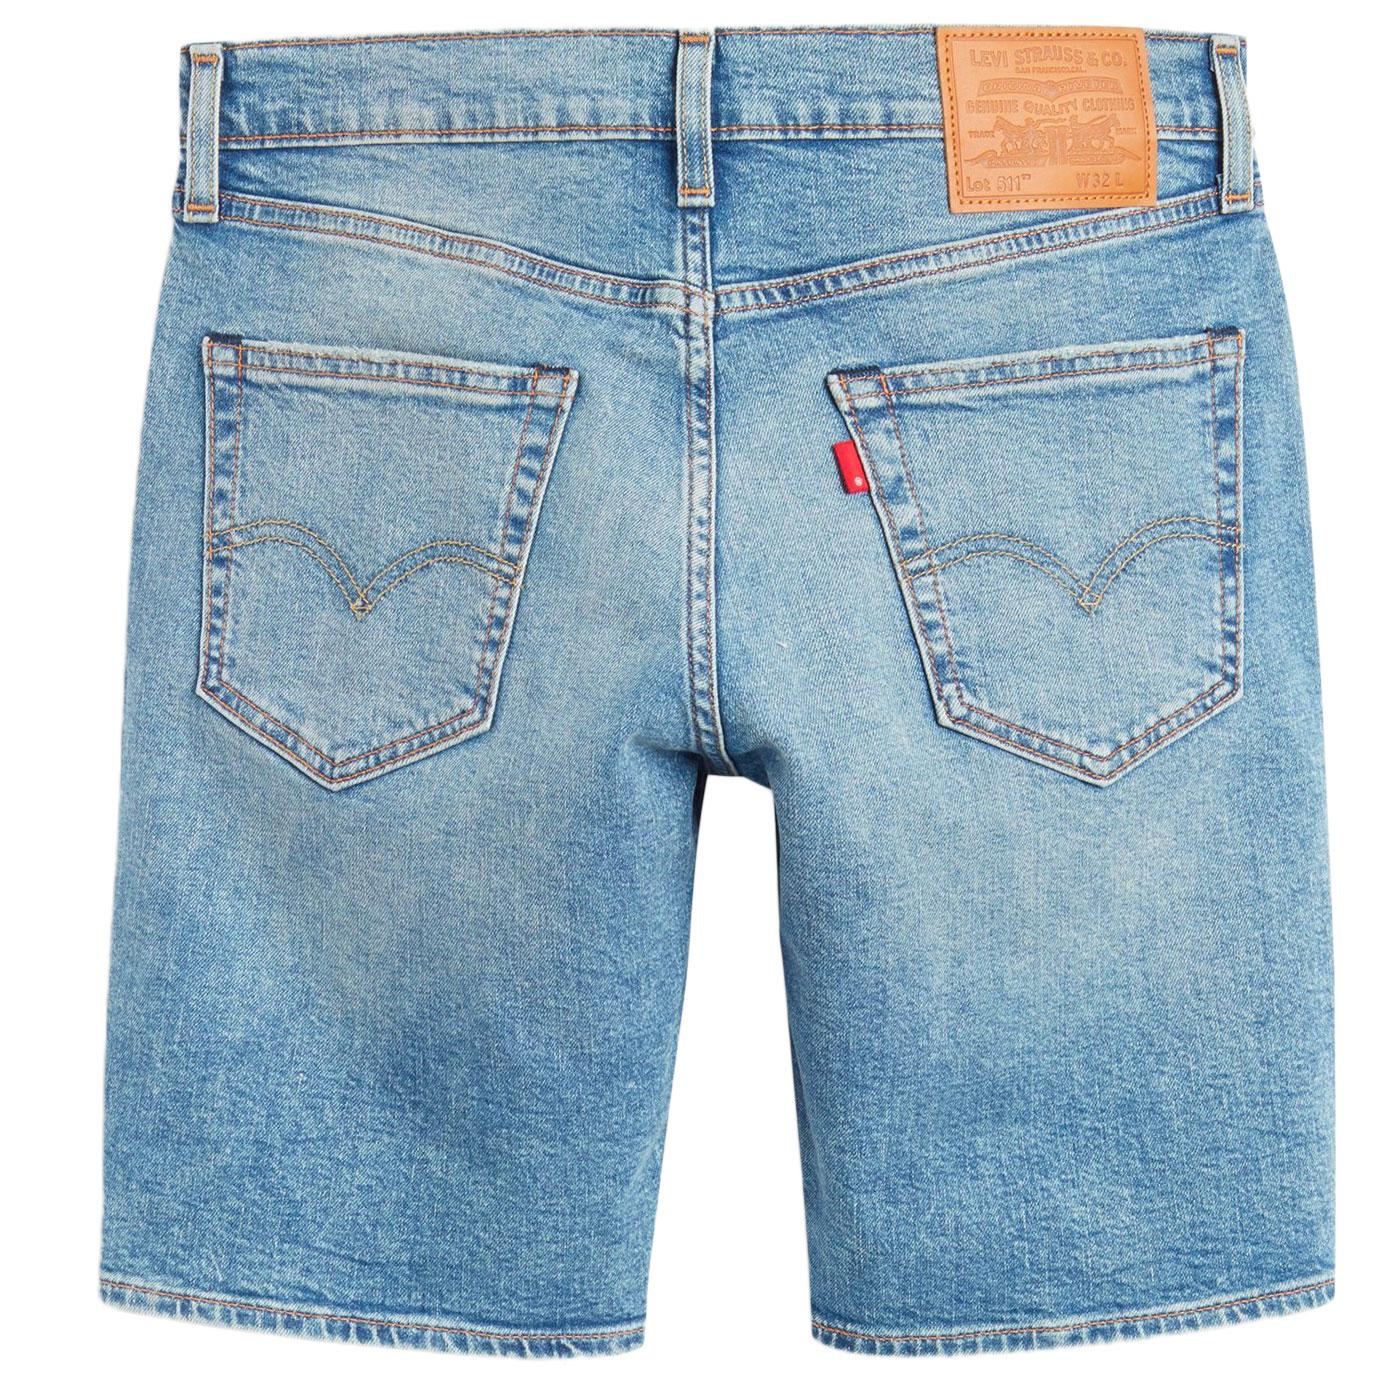 LEVI'S 511 Retro Slim Hemmed Denim Shorts in Baguette Short